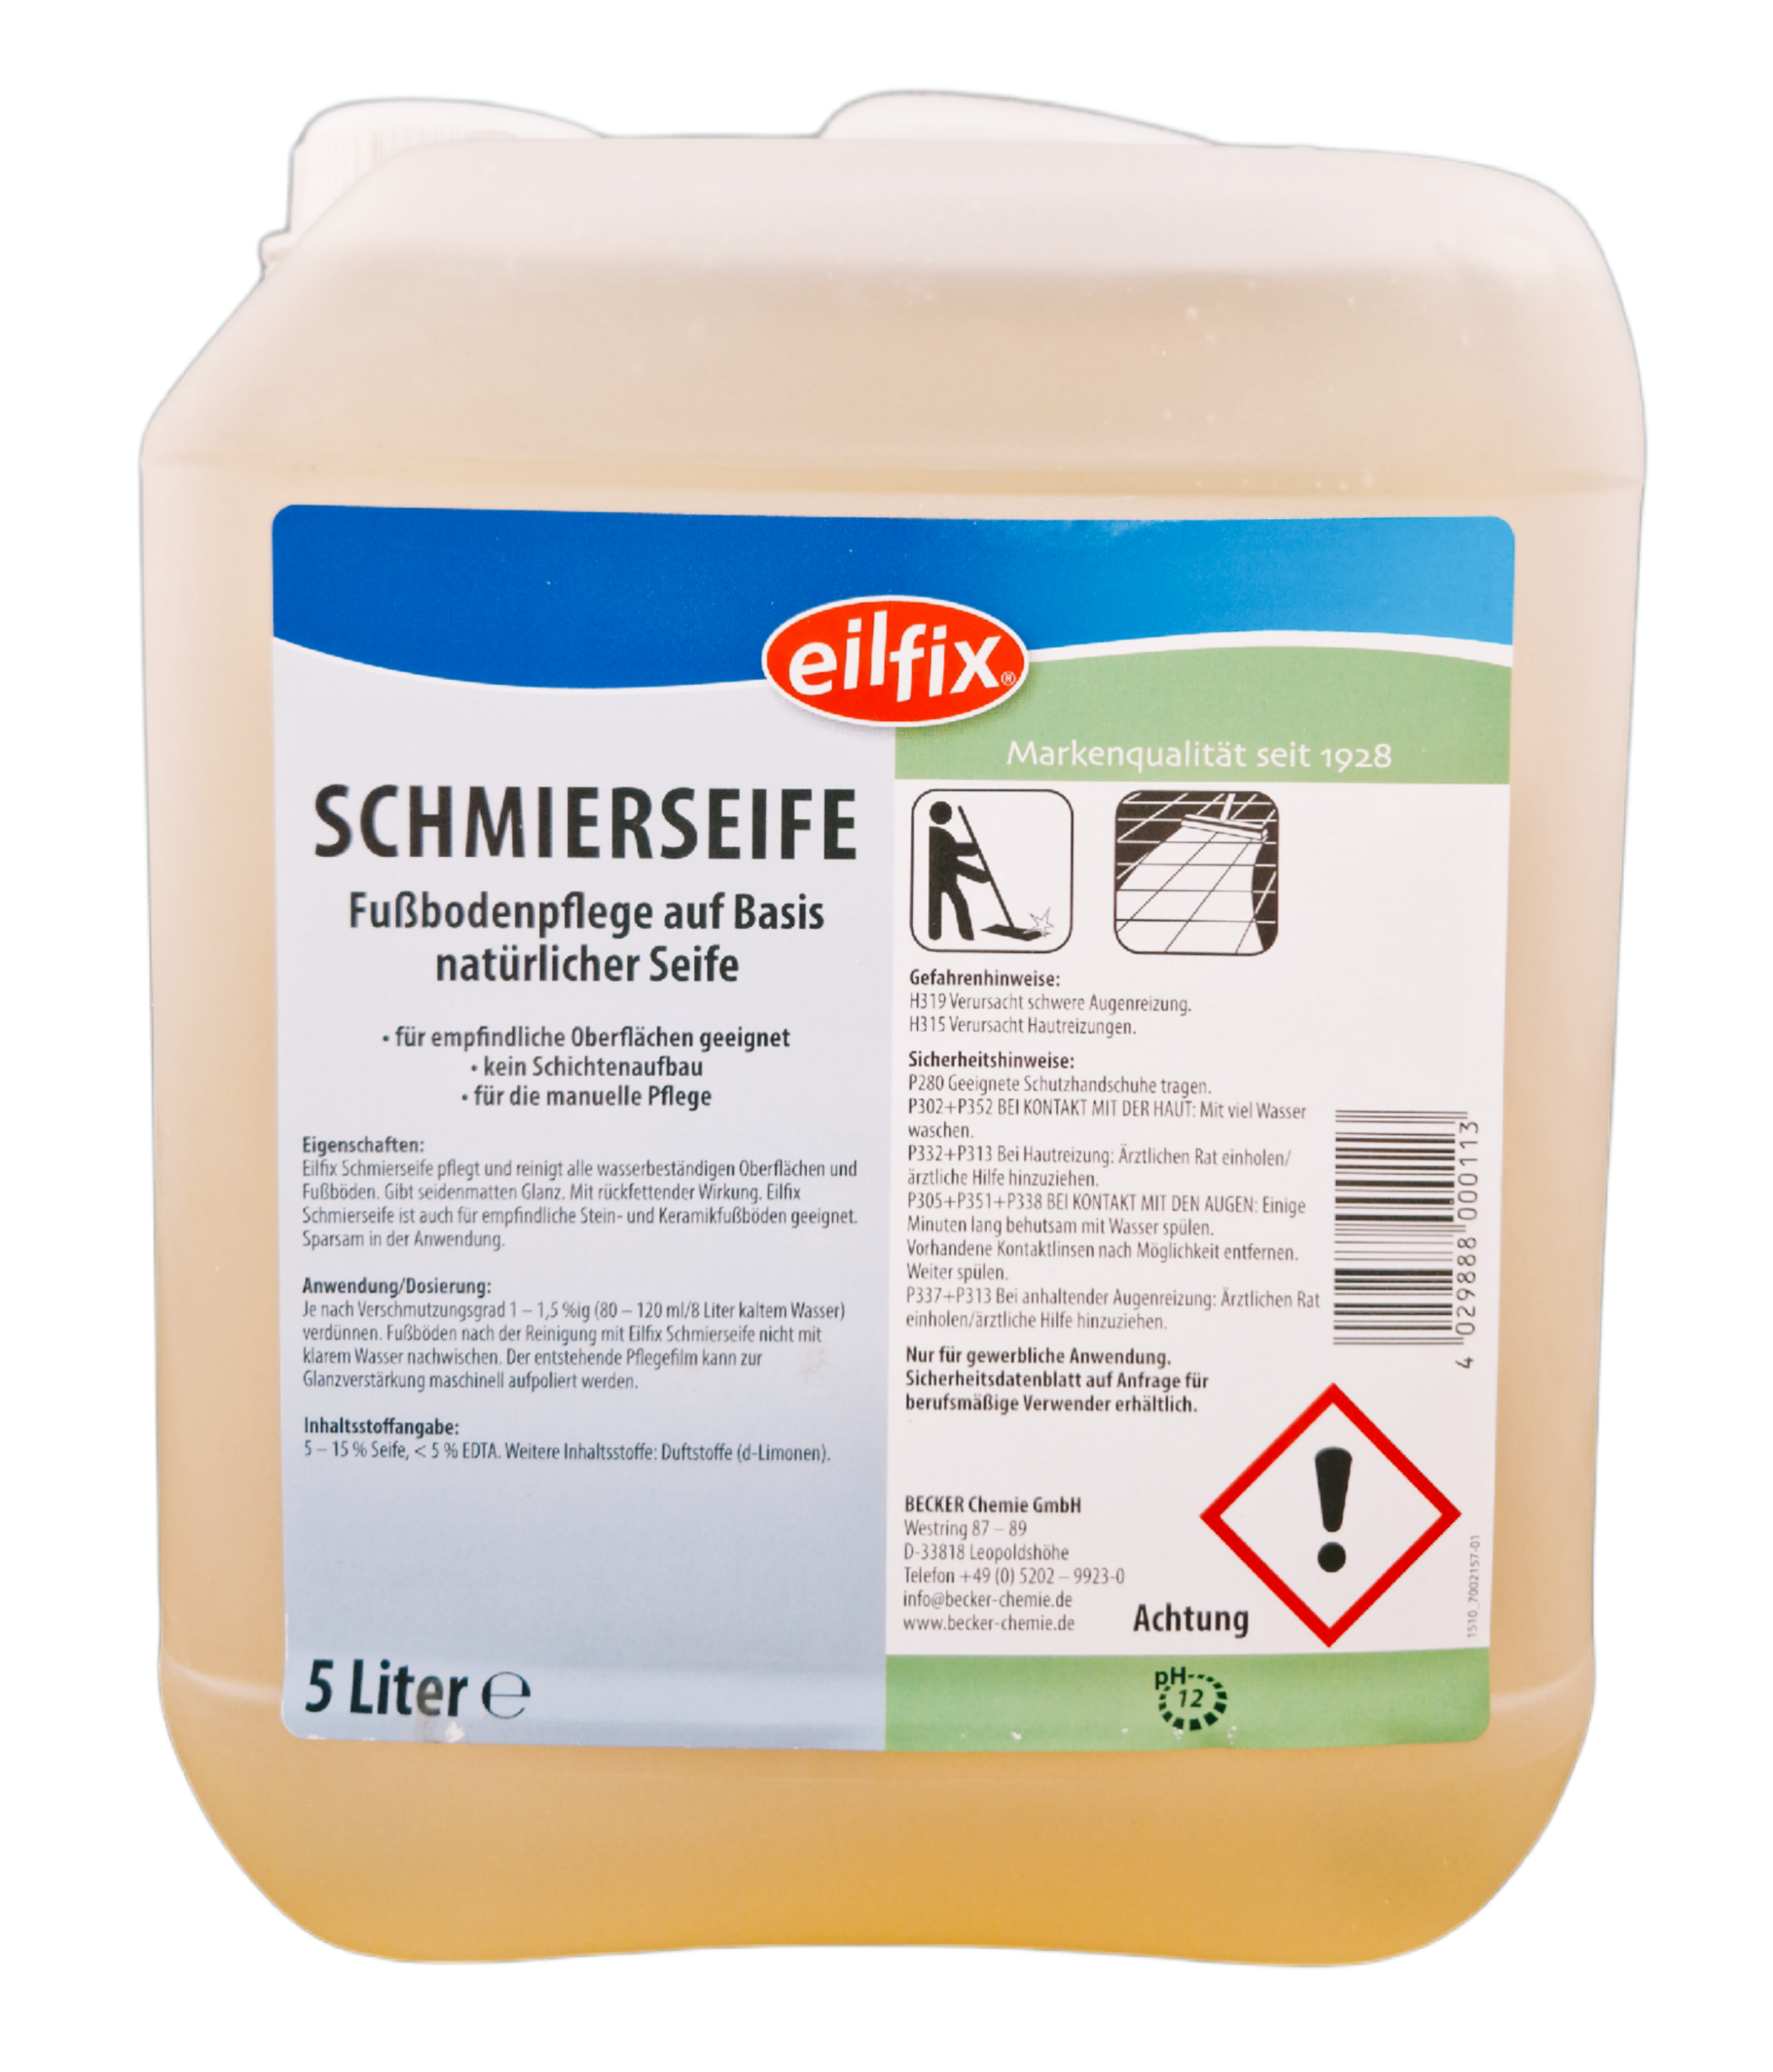 Eilfix - Schmierseife flüssig Wischpflege 5 Liter Kanister